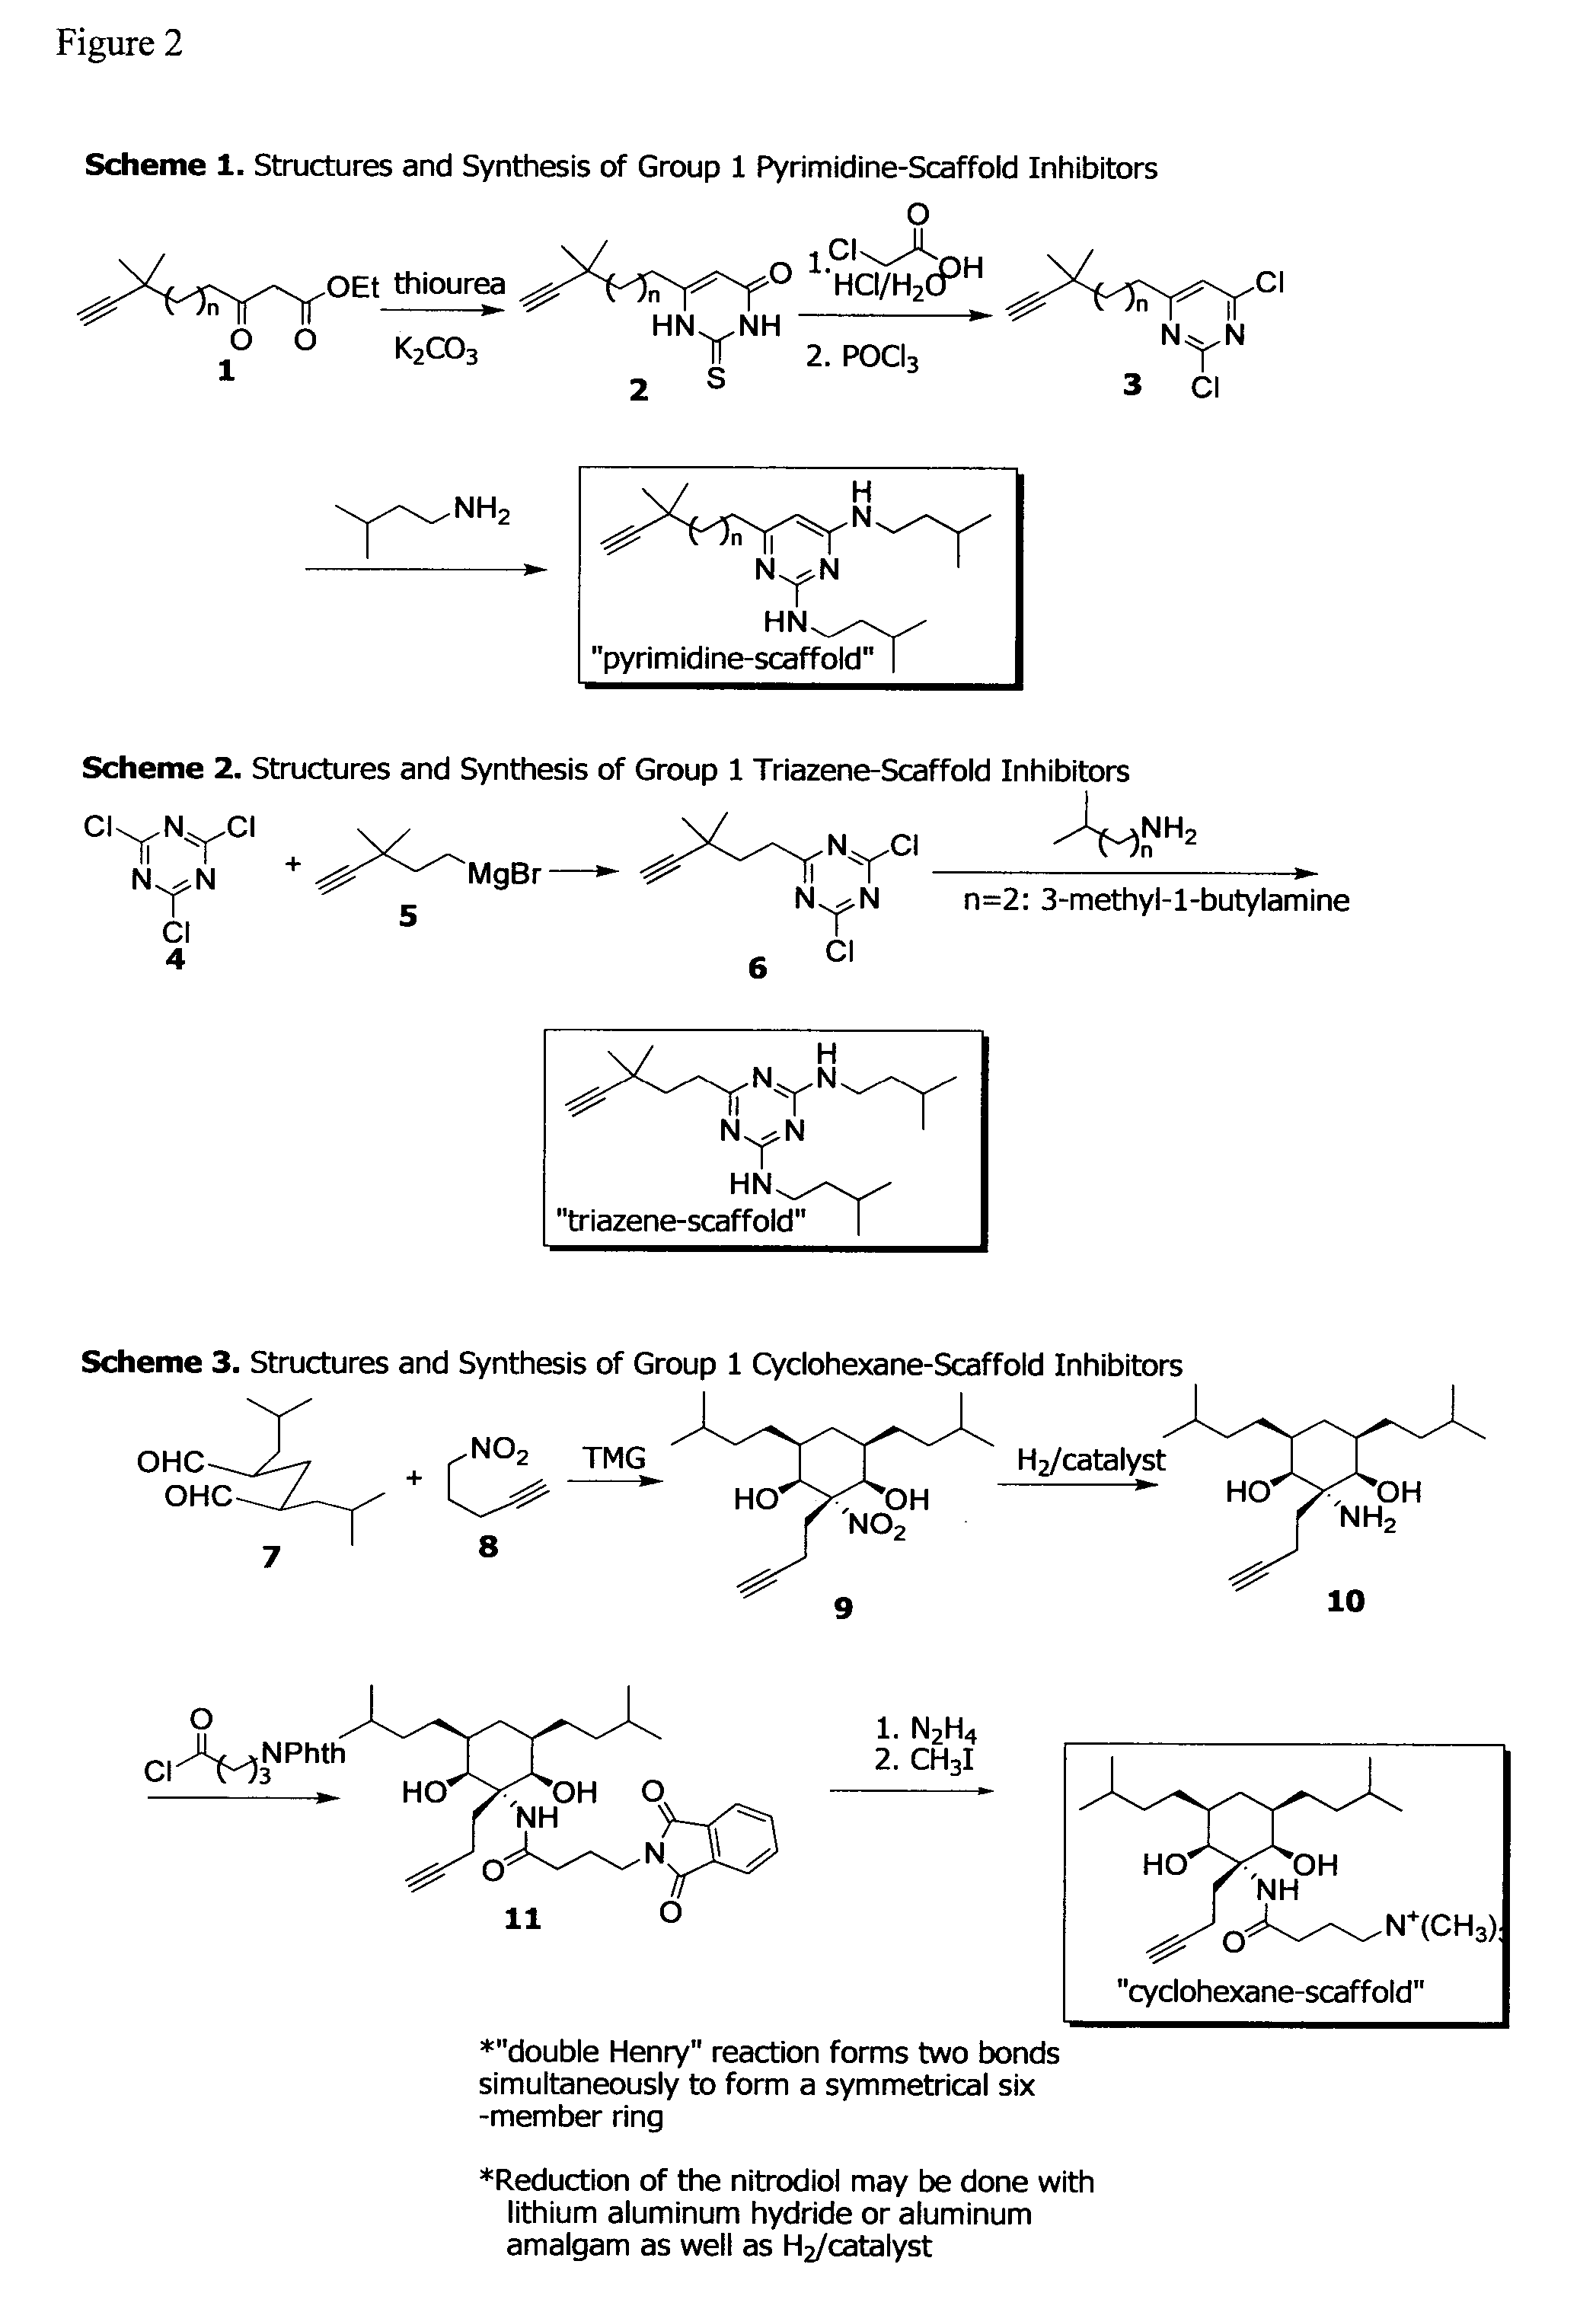 Anti-biofilm compounds